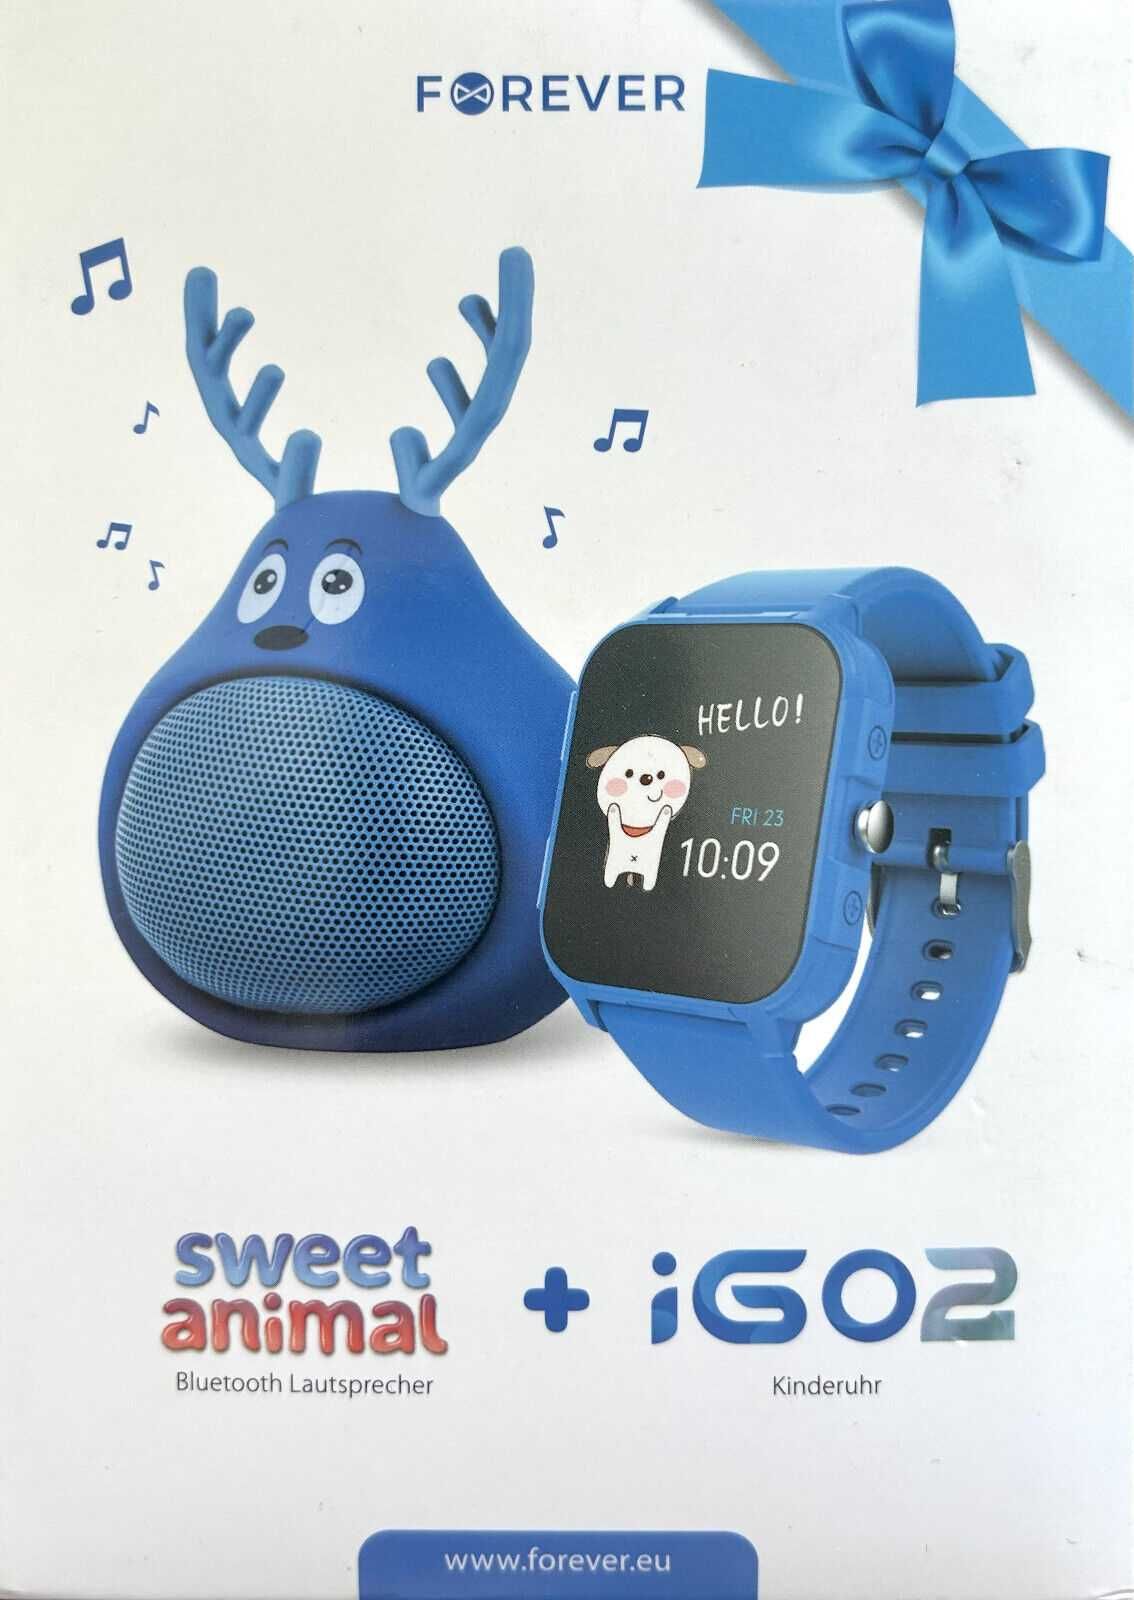 Difuzor Bluetooth ABS-100 și Smartwatch impermeabil Forever iGO